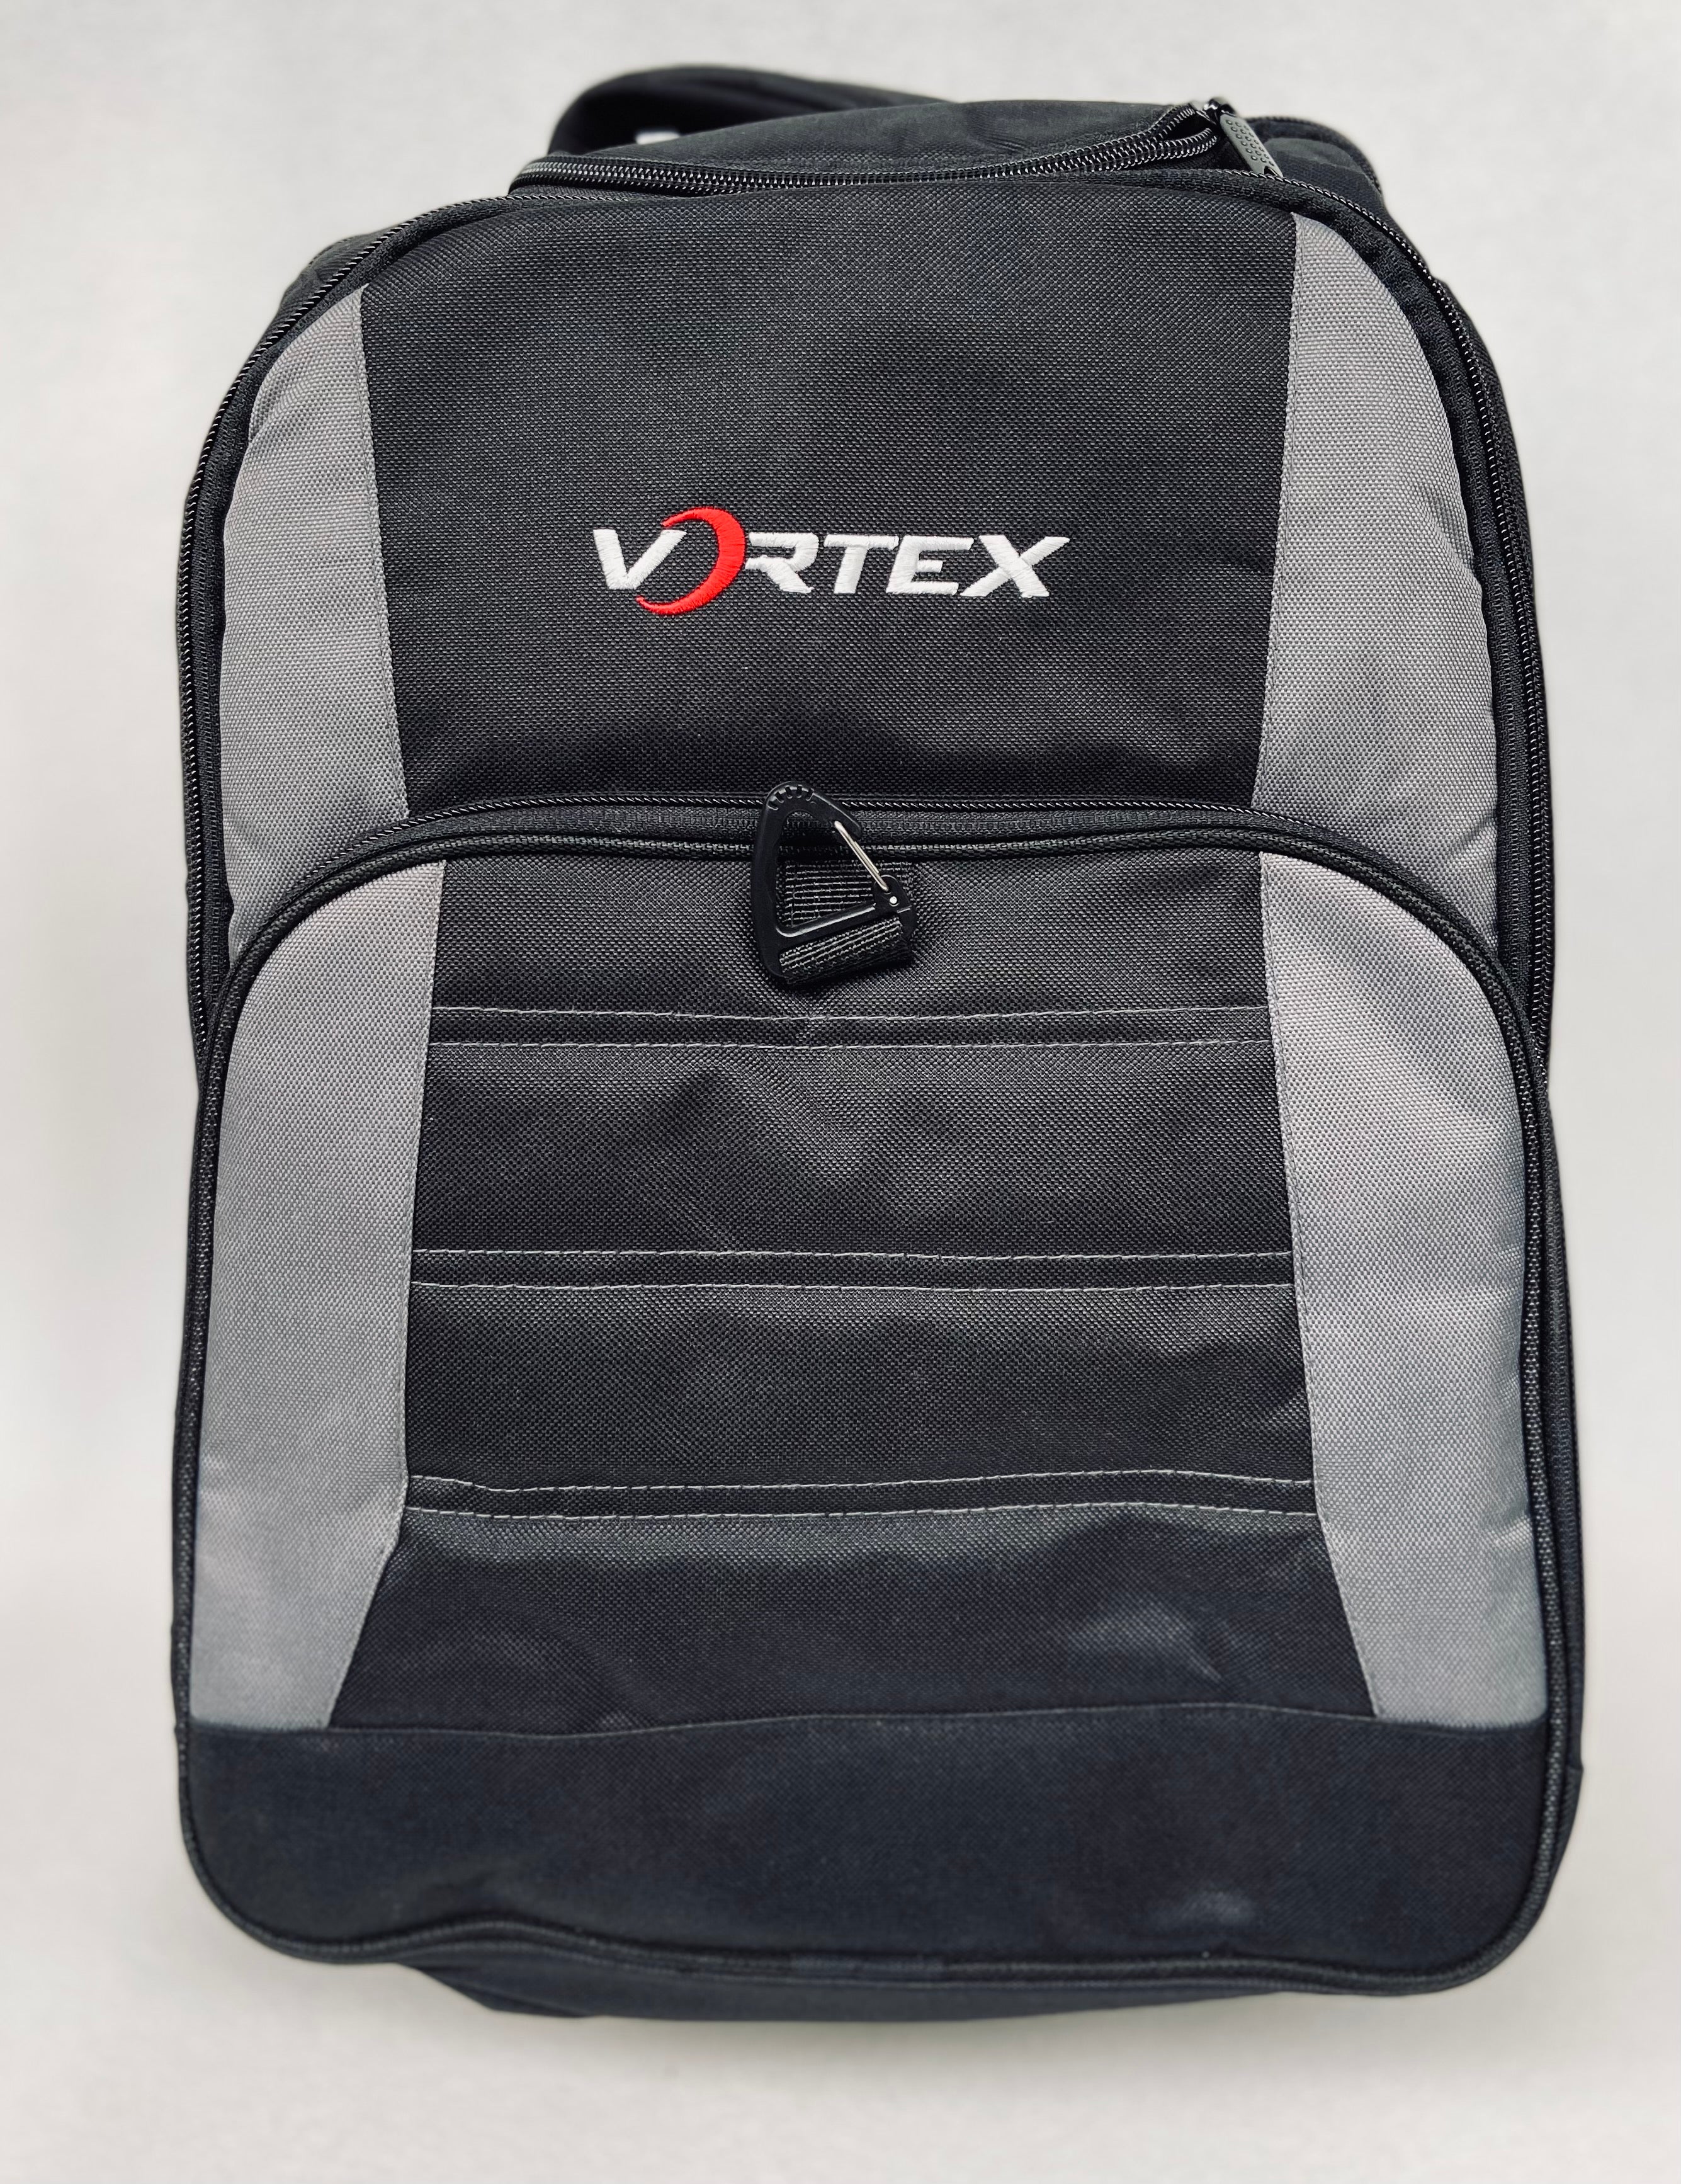 VORTEX Bag Pack - Vortex